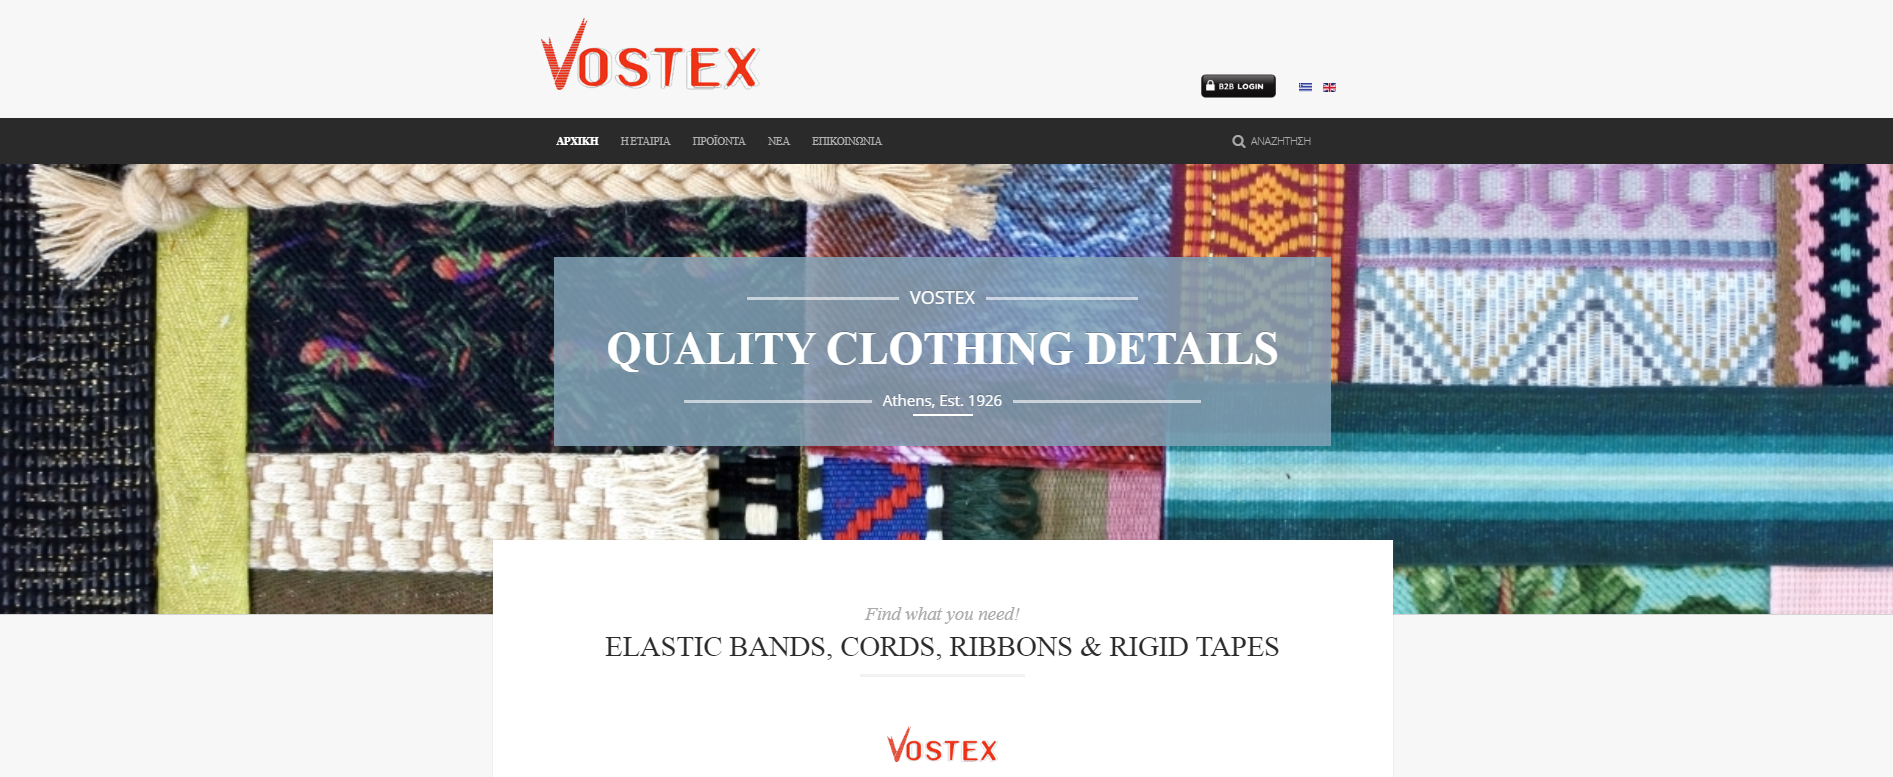 Vostex: Παραδοση Του Νεου Ηλεκτρονικου Καταστηματος